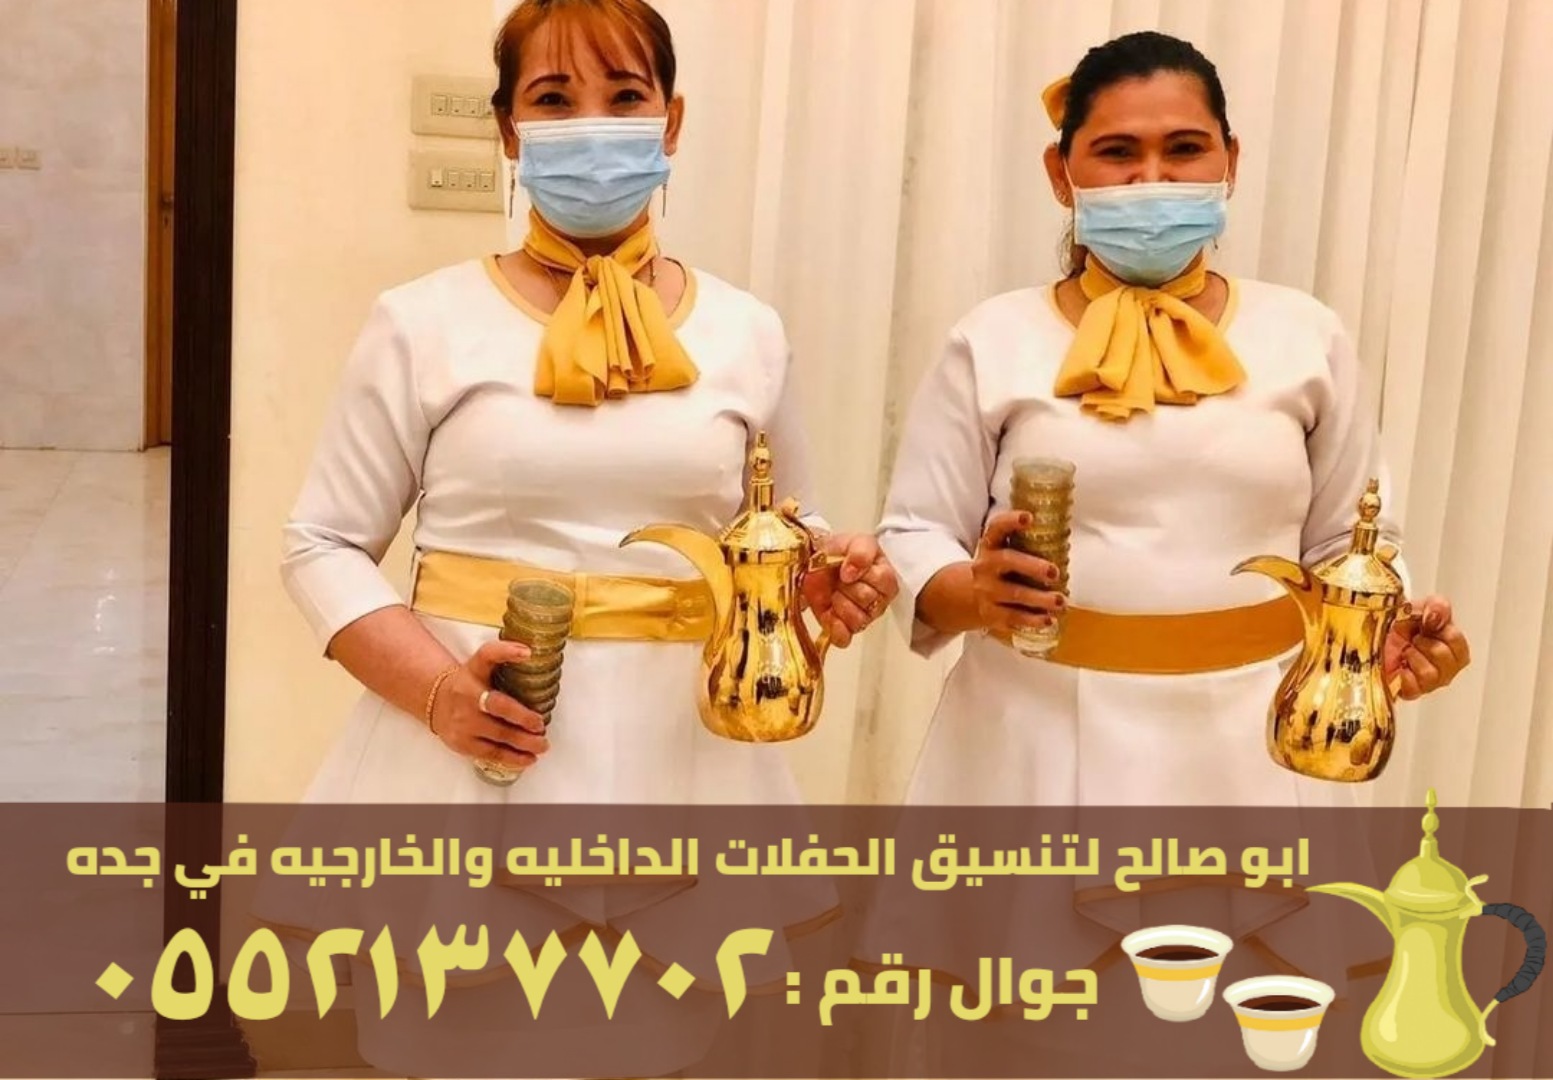 صبابابين قهوة رجال ونساء في جدة